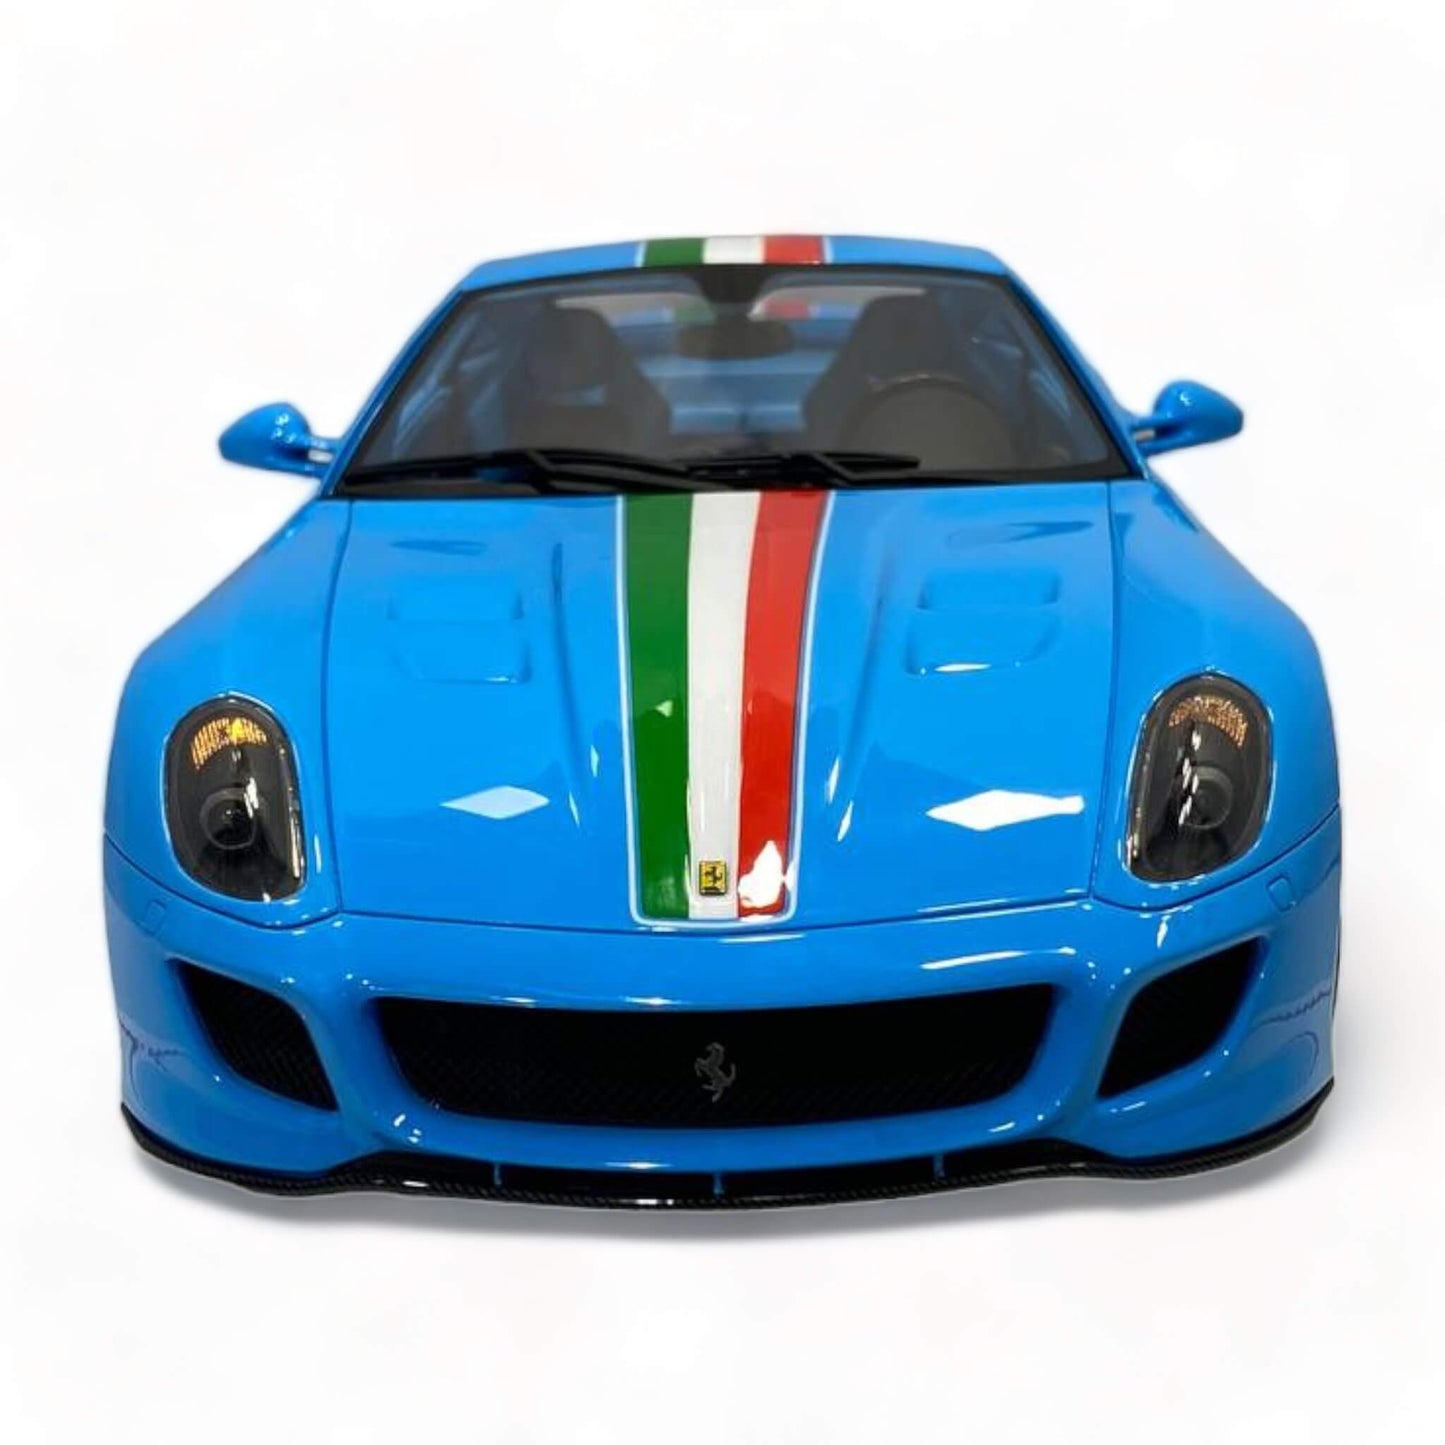 1/18 Ferrari Novitec 599 GTO Blue by Runner (27 of 67):|Sold in Dturman.com Dubai UAE.